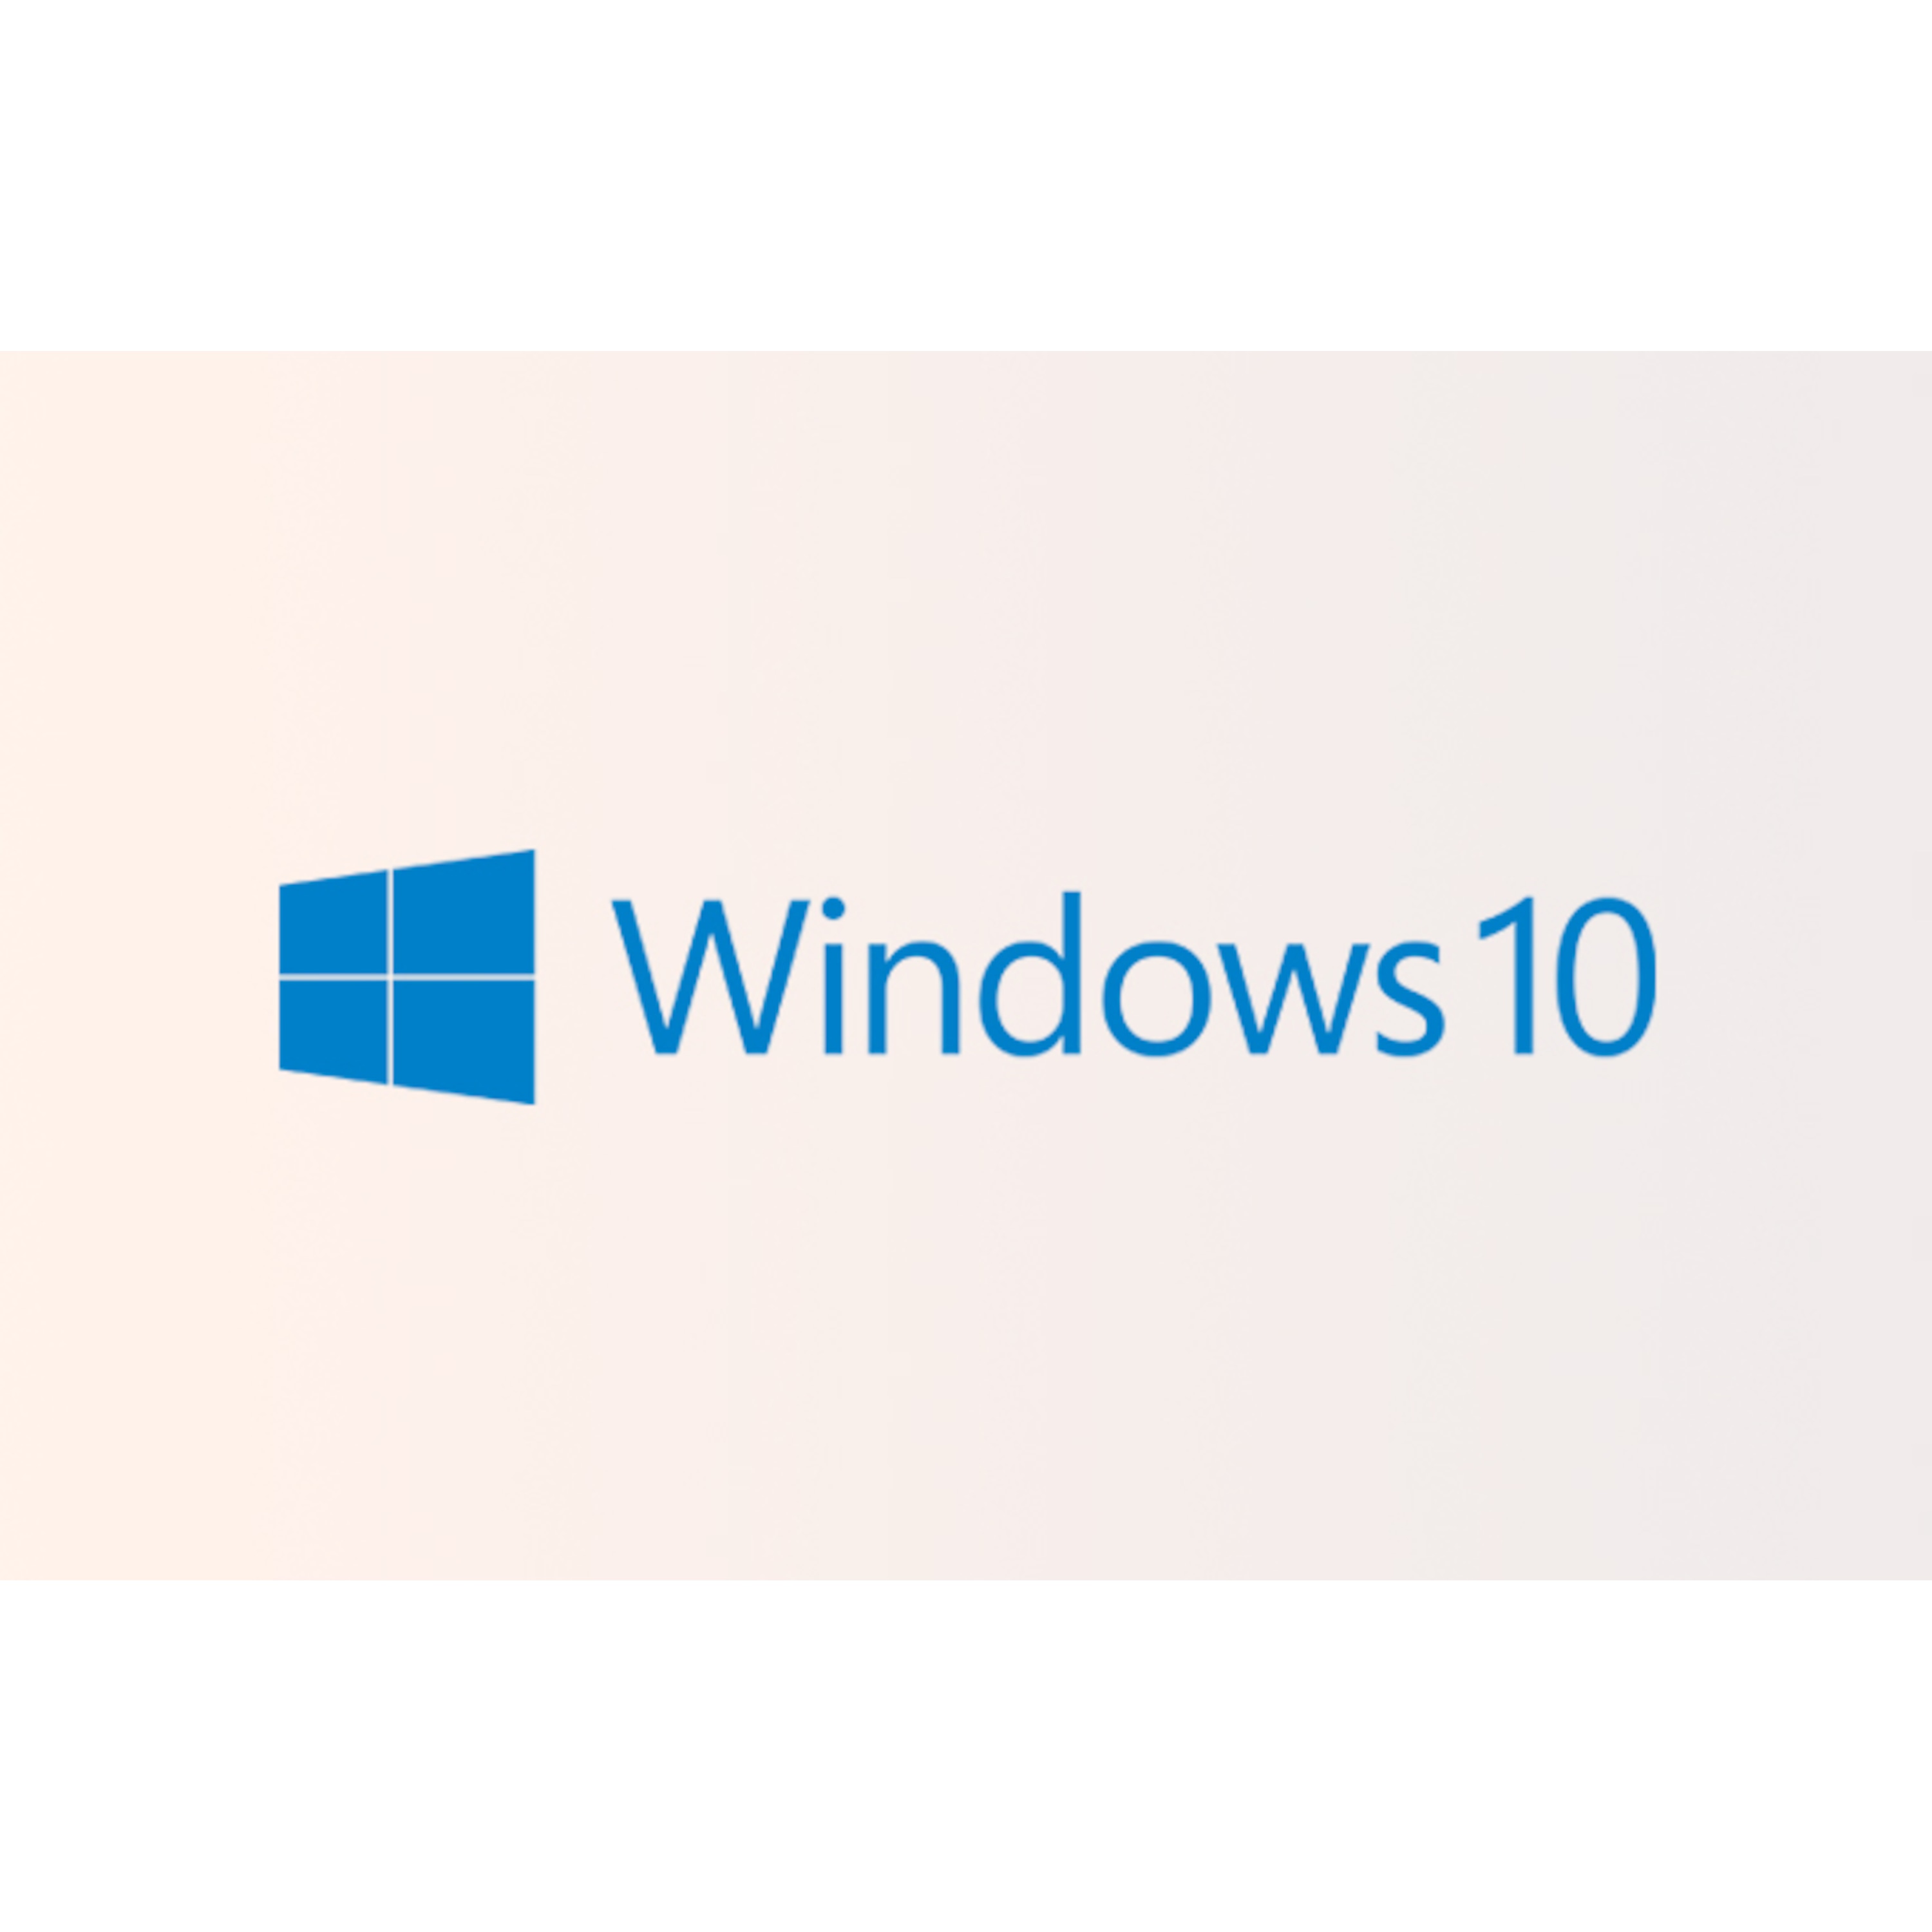 Windows 10 Home - Durchstarten, dranbleiben, schneller am Ziel.